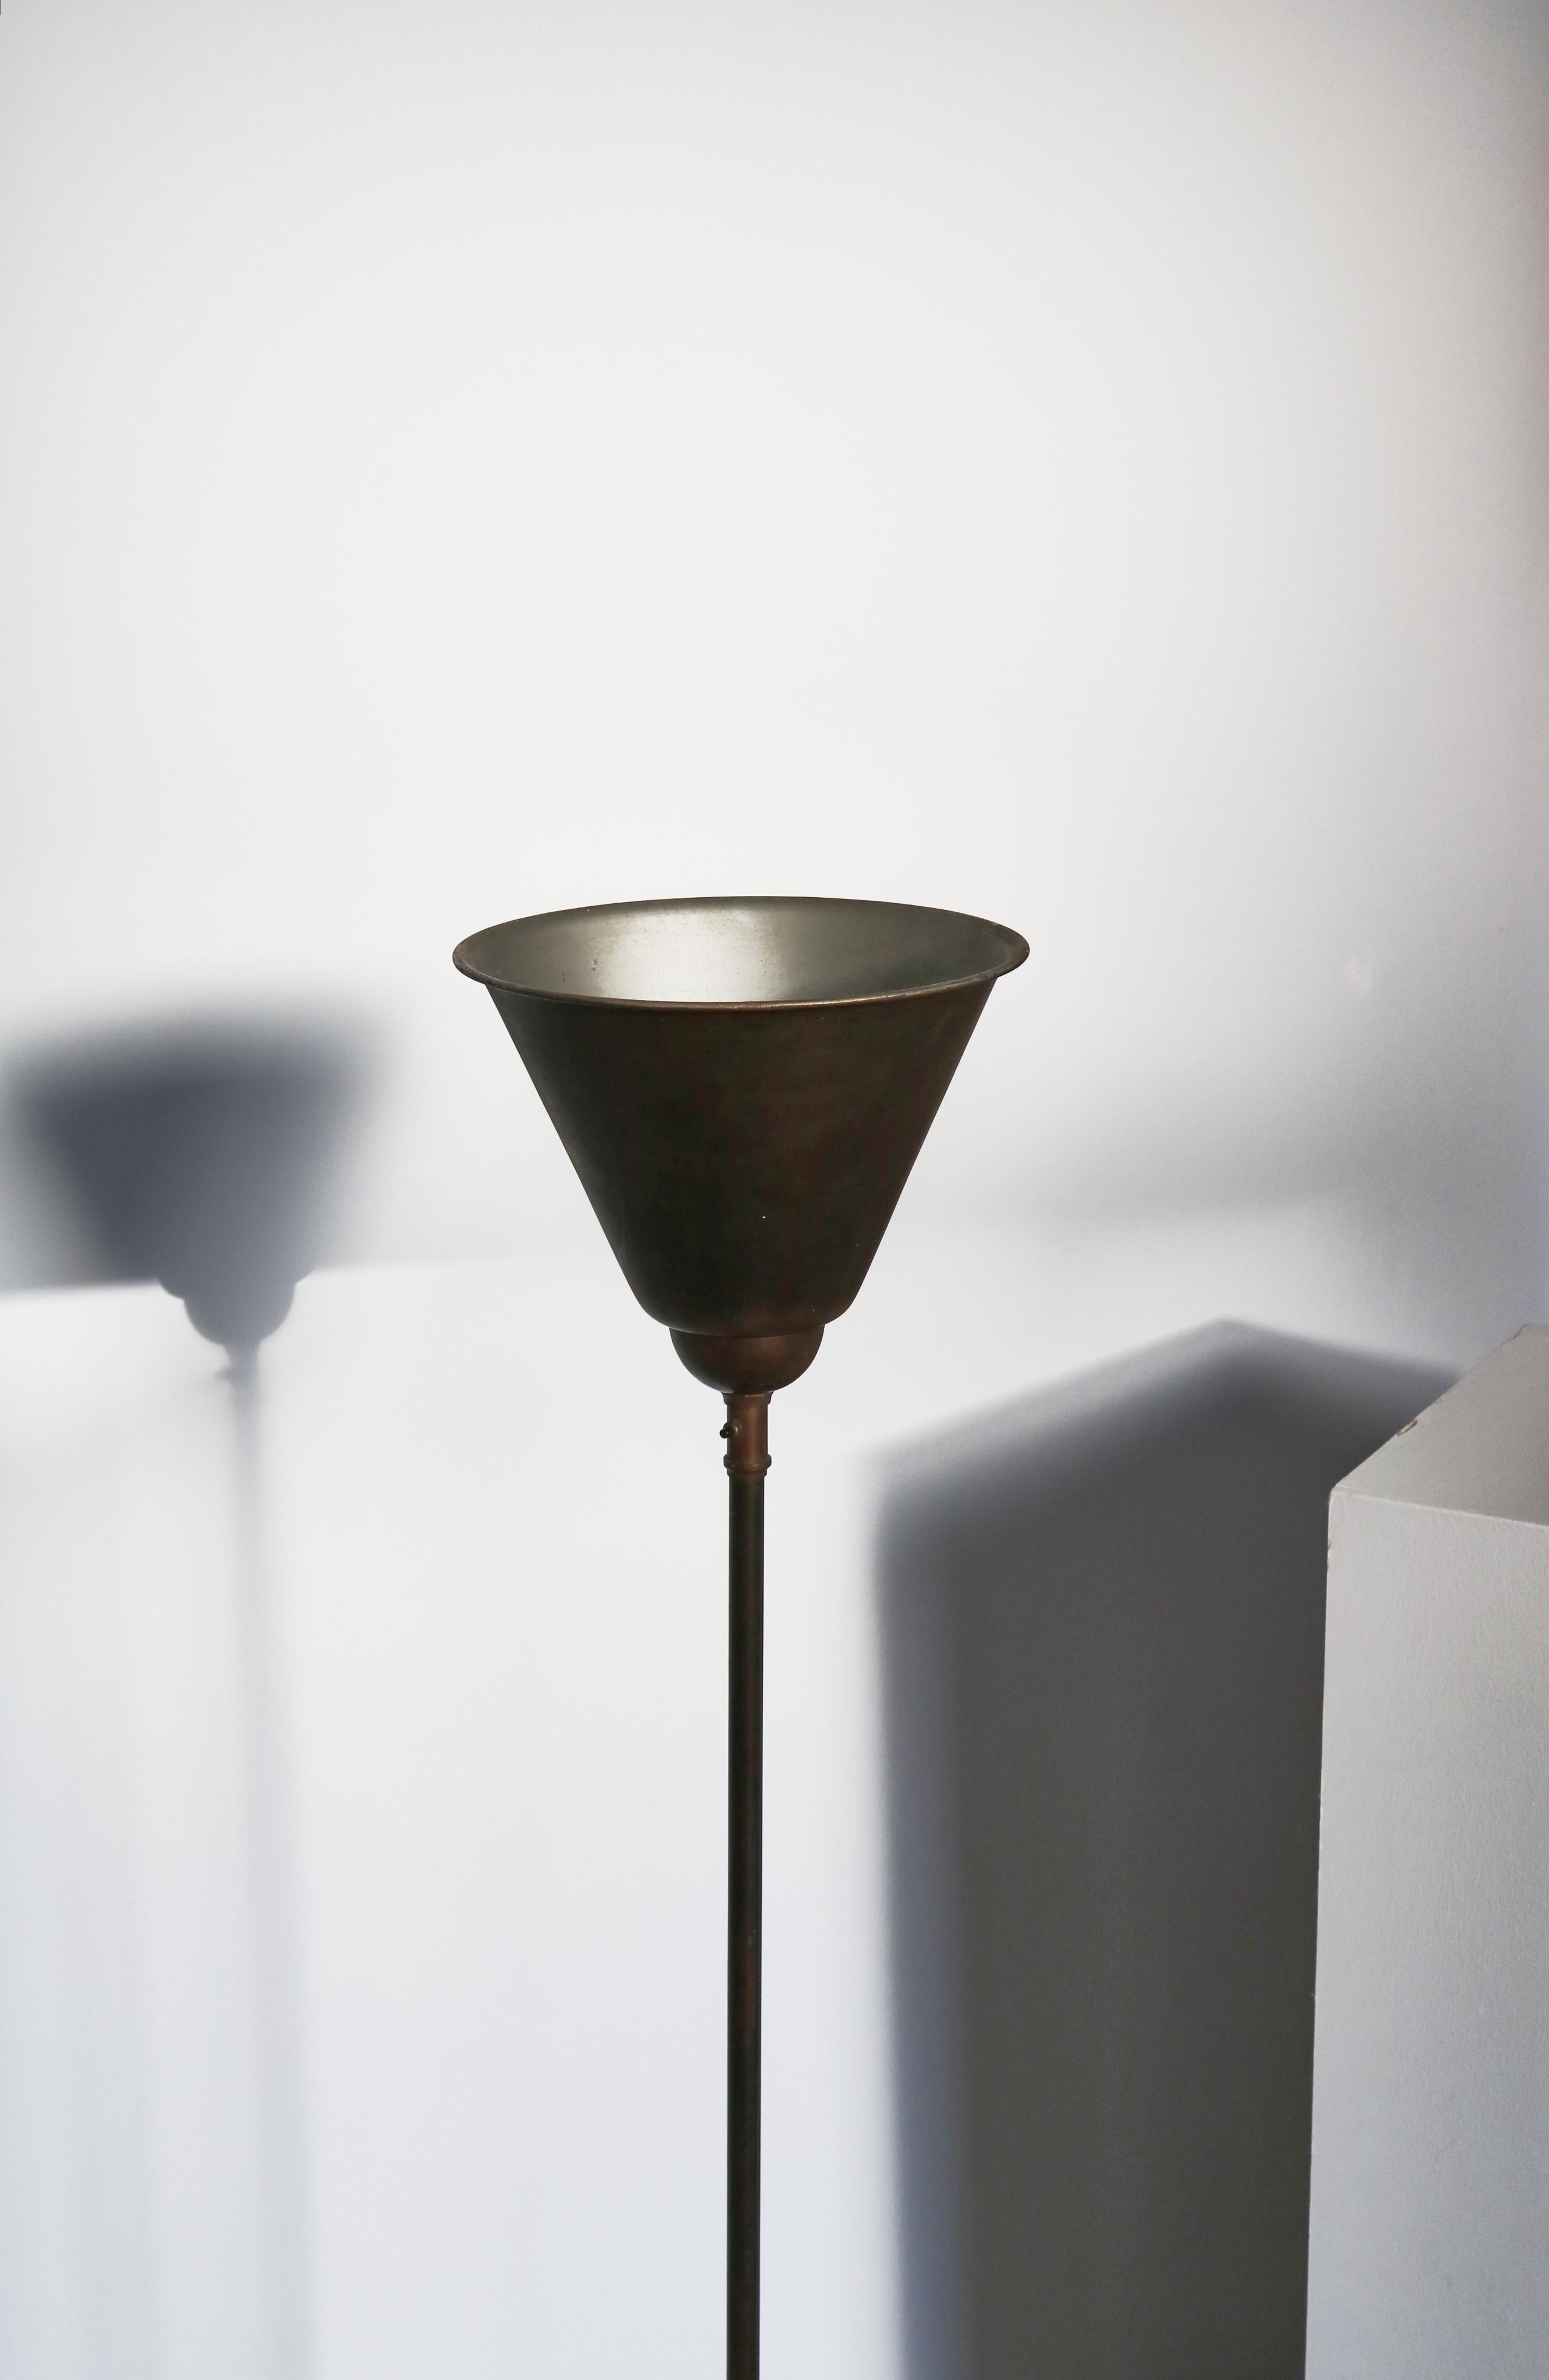 Magnifique lampadaire uplight fabriqué dans les années 1930 par Fog & Mørup, Copenhague. Fabriqué en bronze et en métal avec une patine étonnante. Toutes les pièces d'origine. Interrupteur marche/arrêt sur la tige.